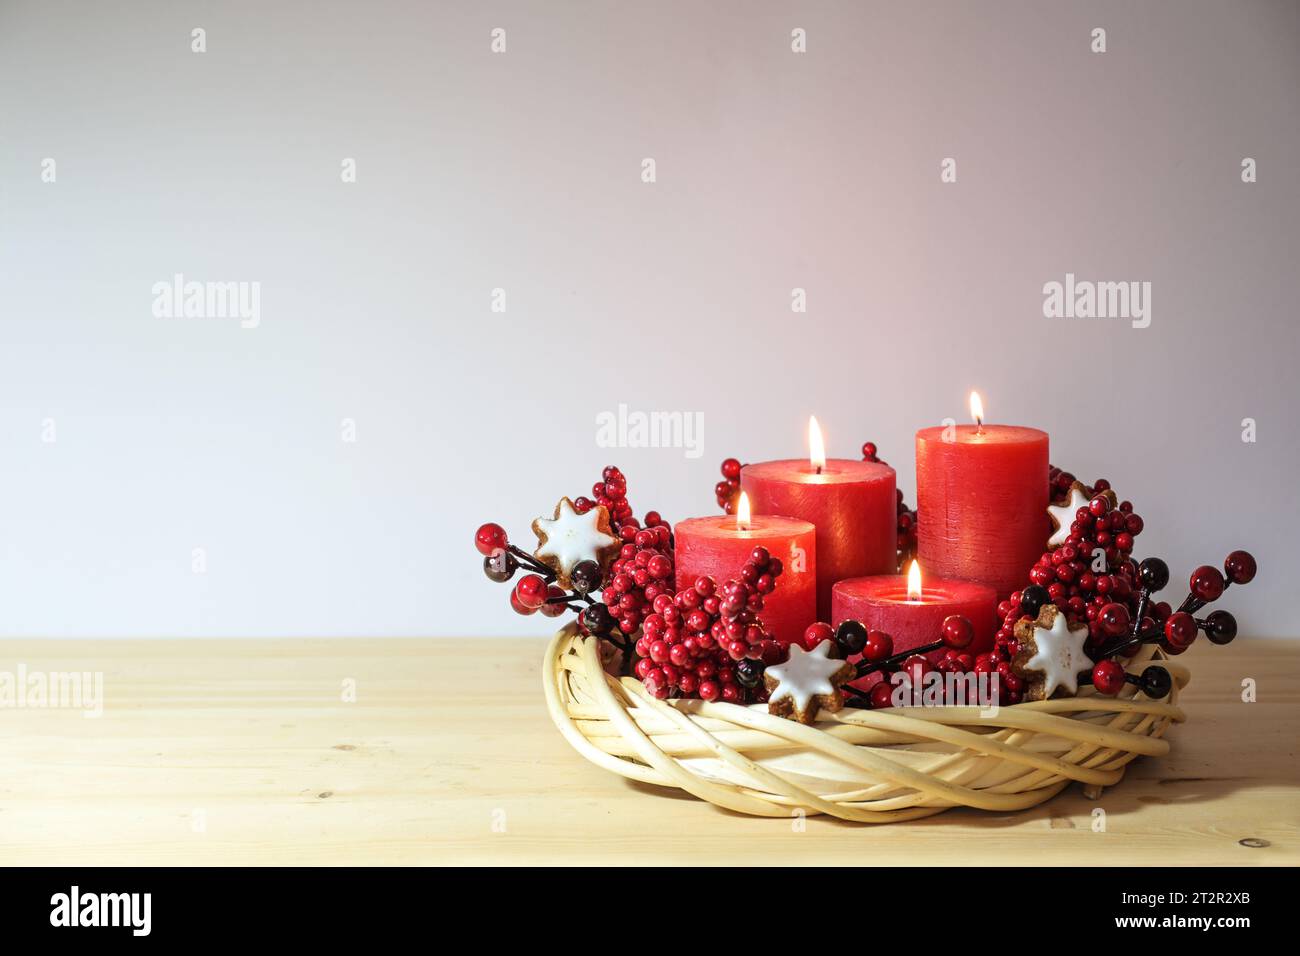 Quarto avvento con quattro candele rosse accese in una corona di vimini di salice naturale con biscotti stellati alla cannella e frutti di bosco artificiali, decorazioni natalizie, copia Foto Stock